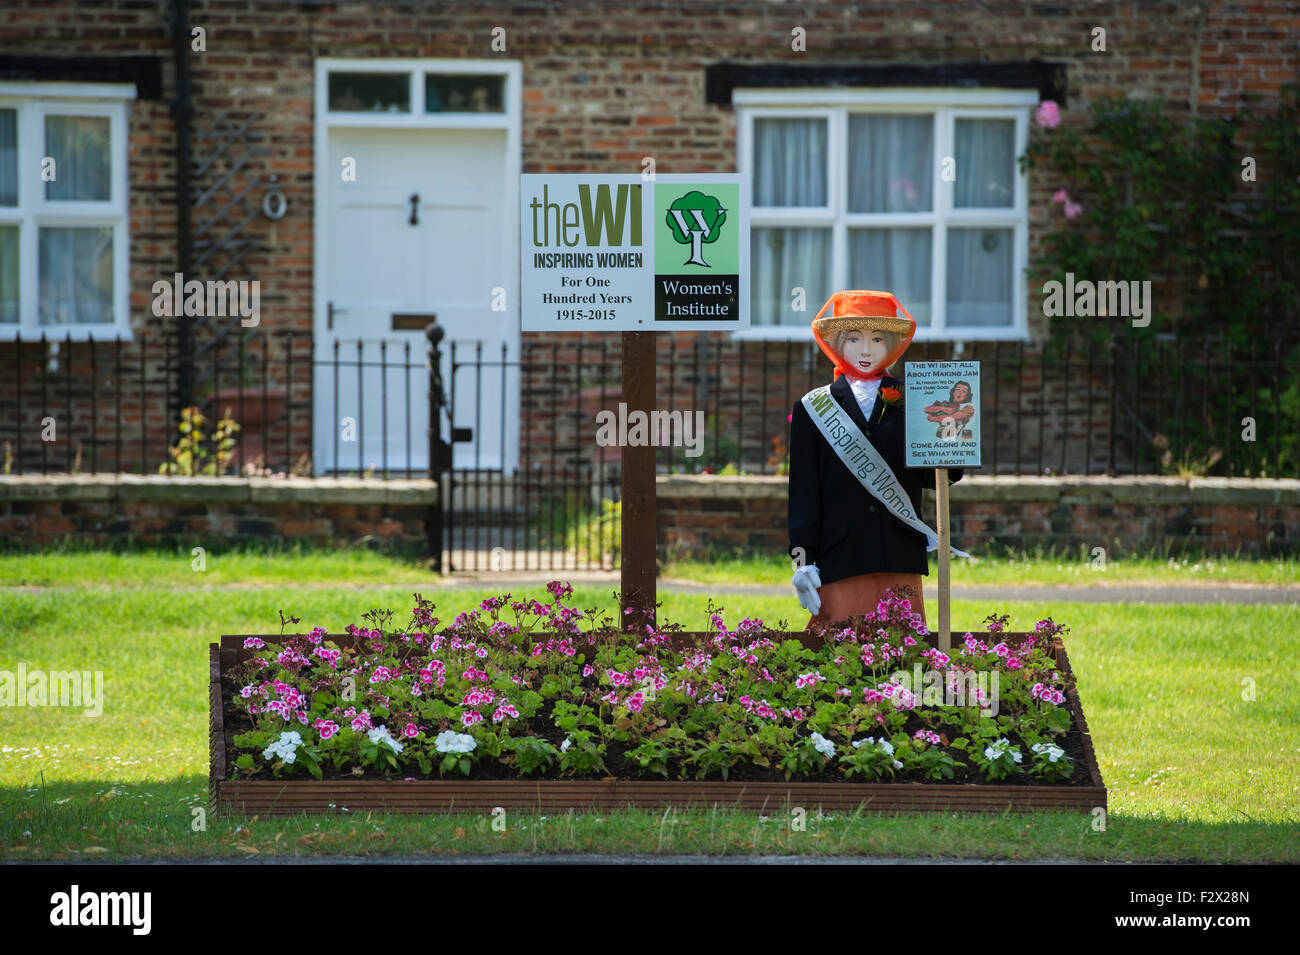 Un épouvantail & affichage floral (fleurs) surélevée de commémorer le centenaire de l'Institut de la femme (WI) - Upper Poppleton village, England, UK. Banque D'Images